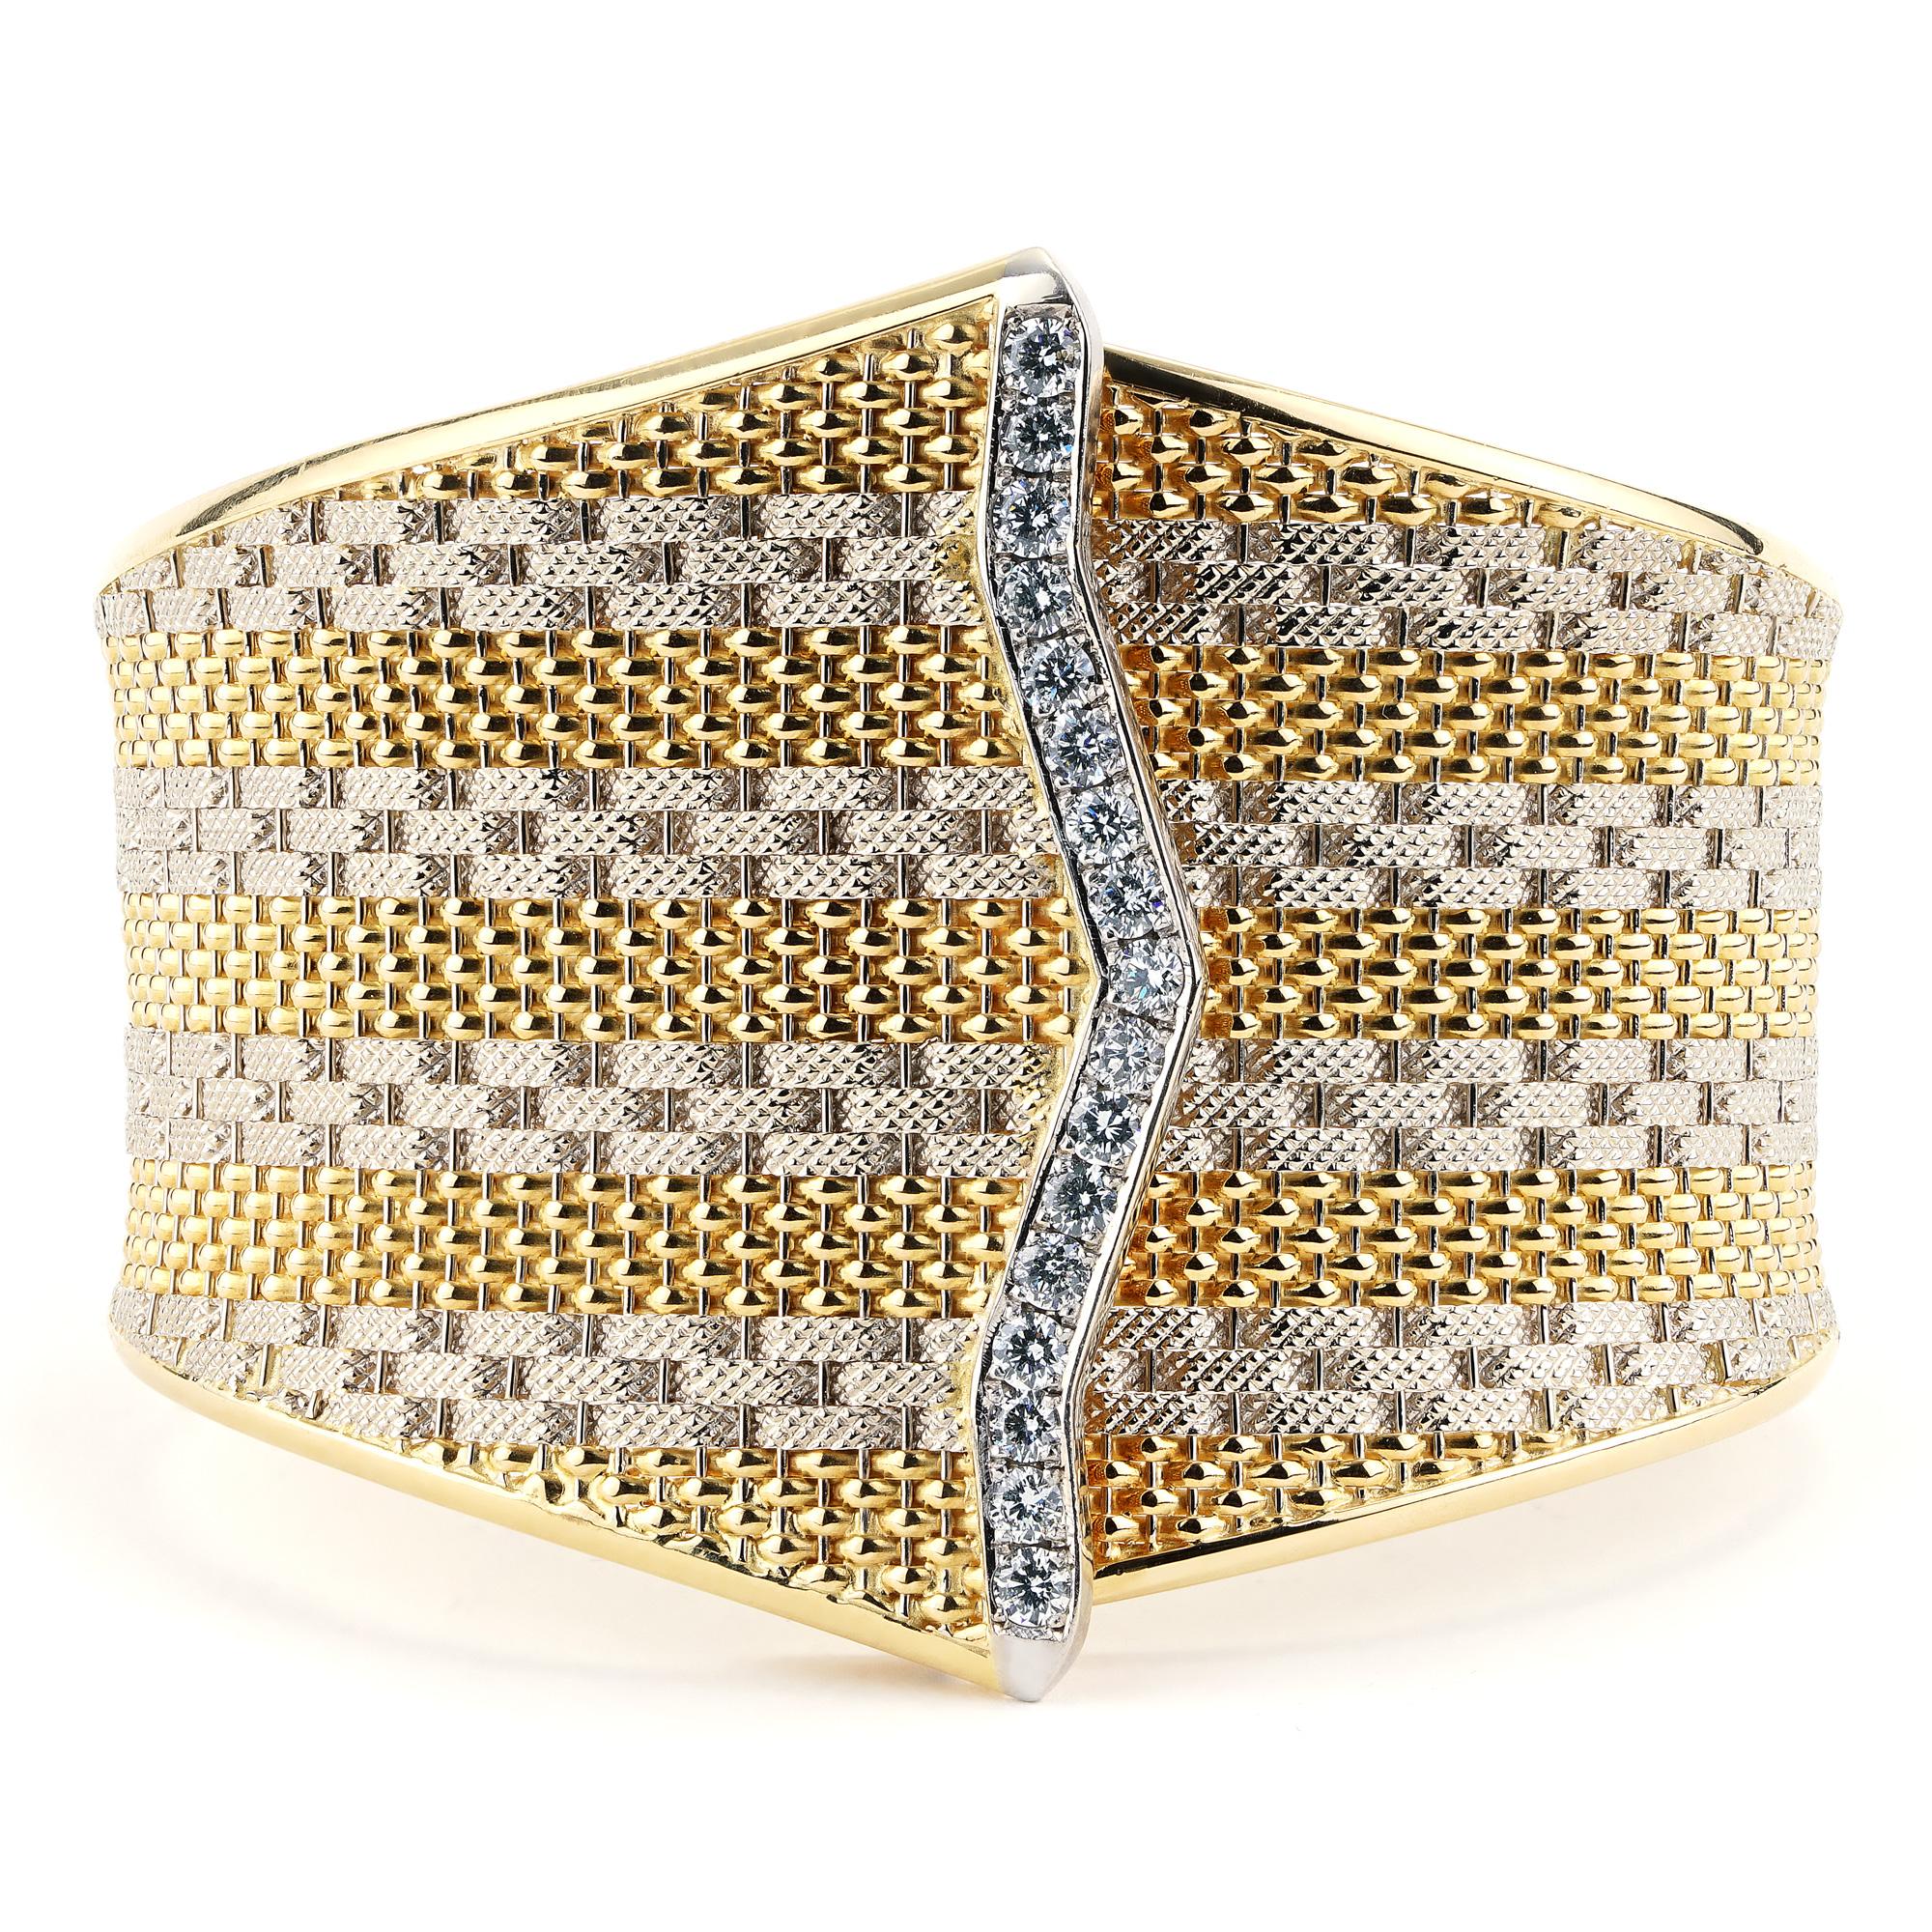 Eleganz und Raffinesse treffen bei diesem exquisiten zweifarbigen Diamantarmband aufeinander. Das aus luxuriösem 18-karätigem Gelb- und Weißgold gefertigte Armband zeigt eine harmonische Mischung aus warmen und kühlen Tönen und verleiht jedem